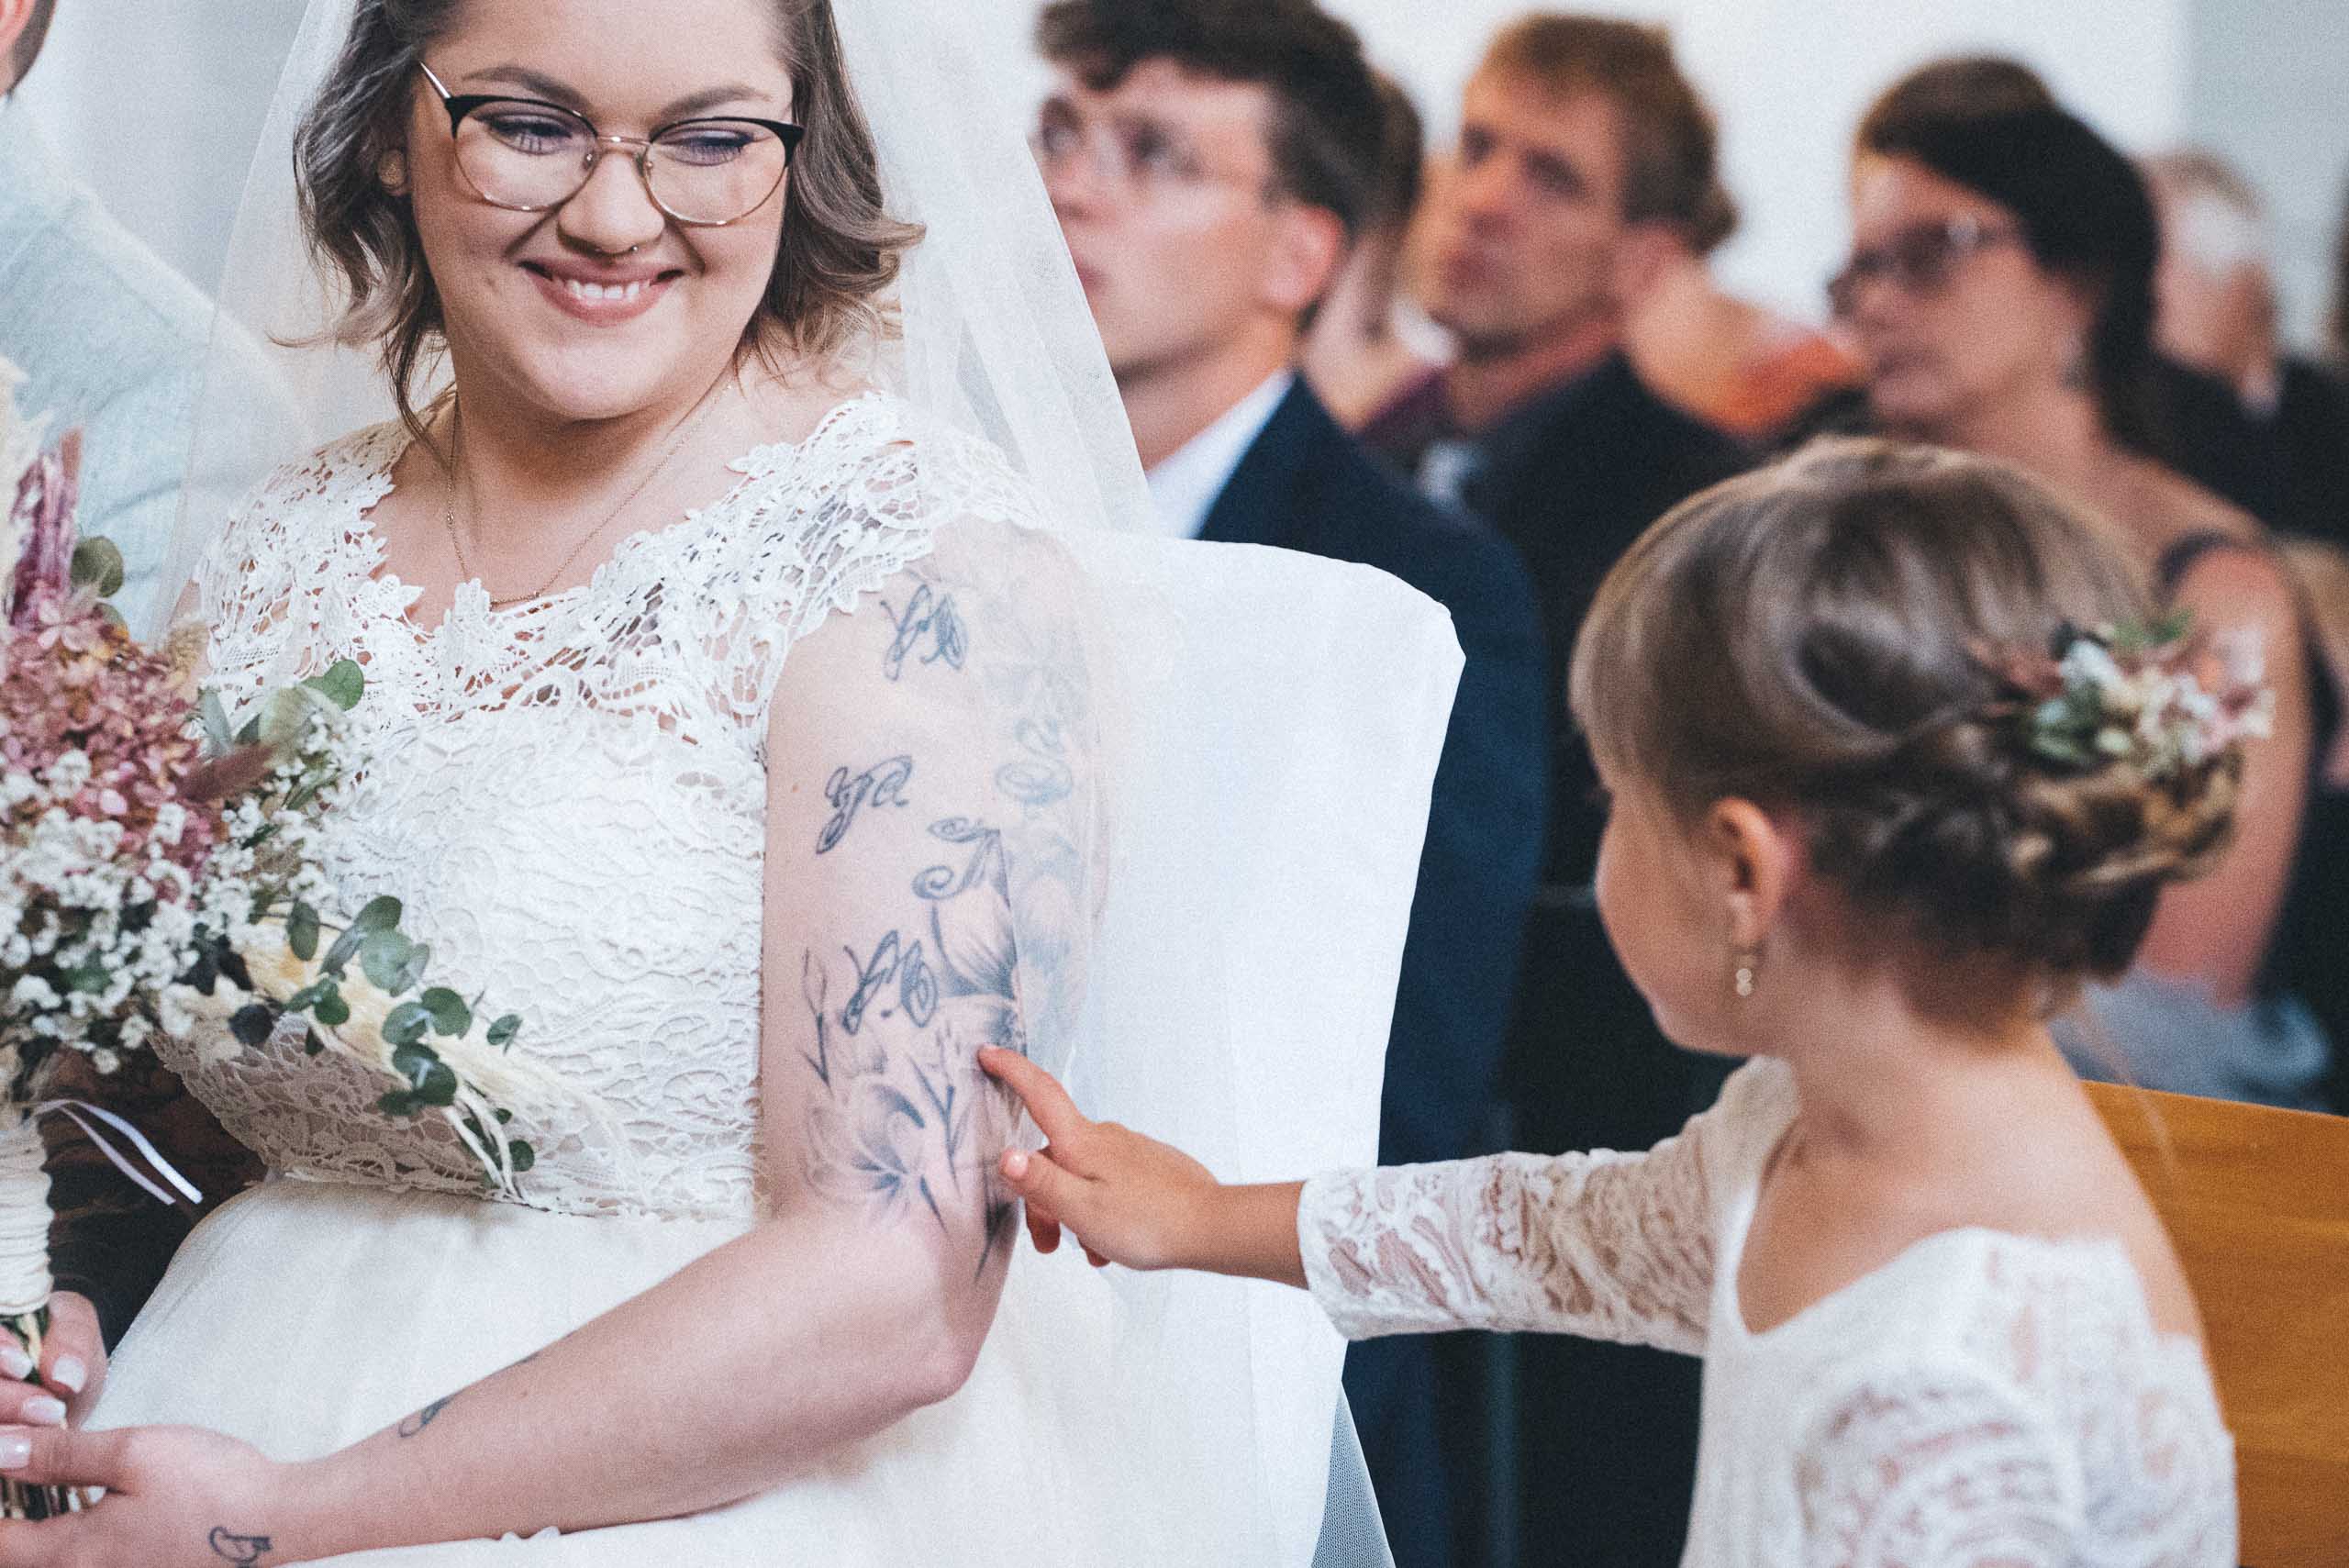 Momentaufnahme einer Hochzeit, die Braut im weißen Hochzeitskleid lächelt ihr Kind an. Das Kind berührt den Arm der Mutter.